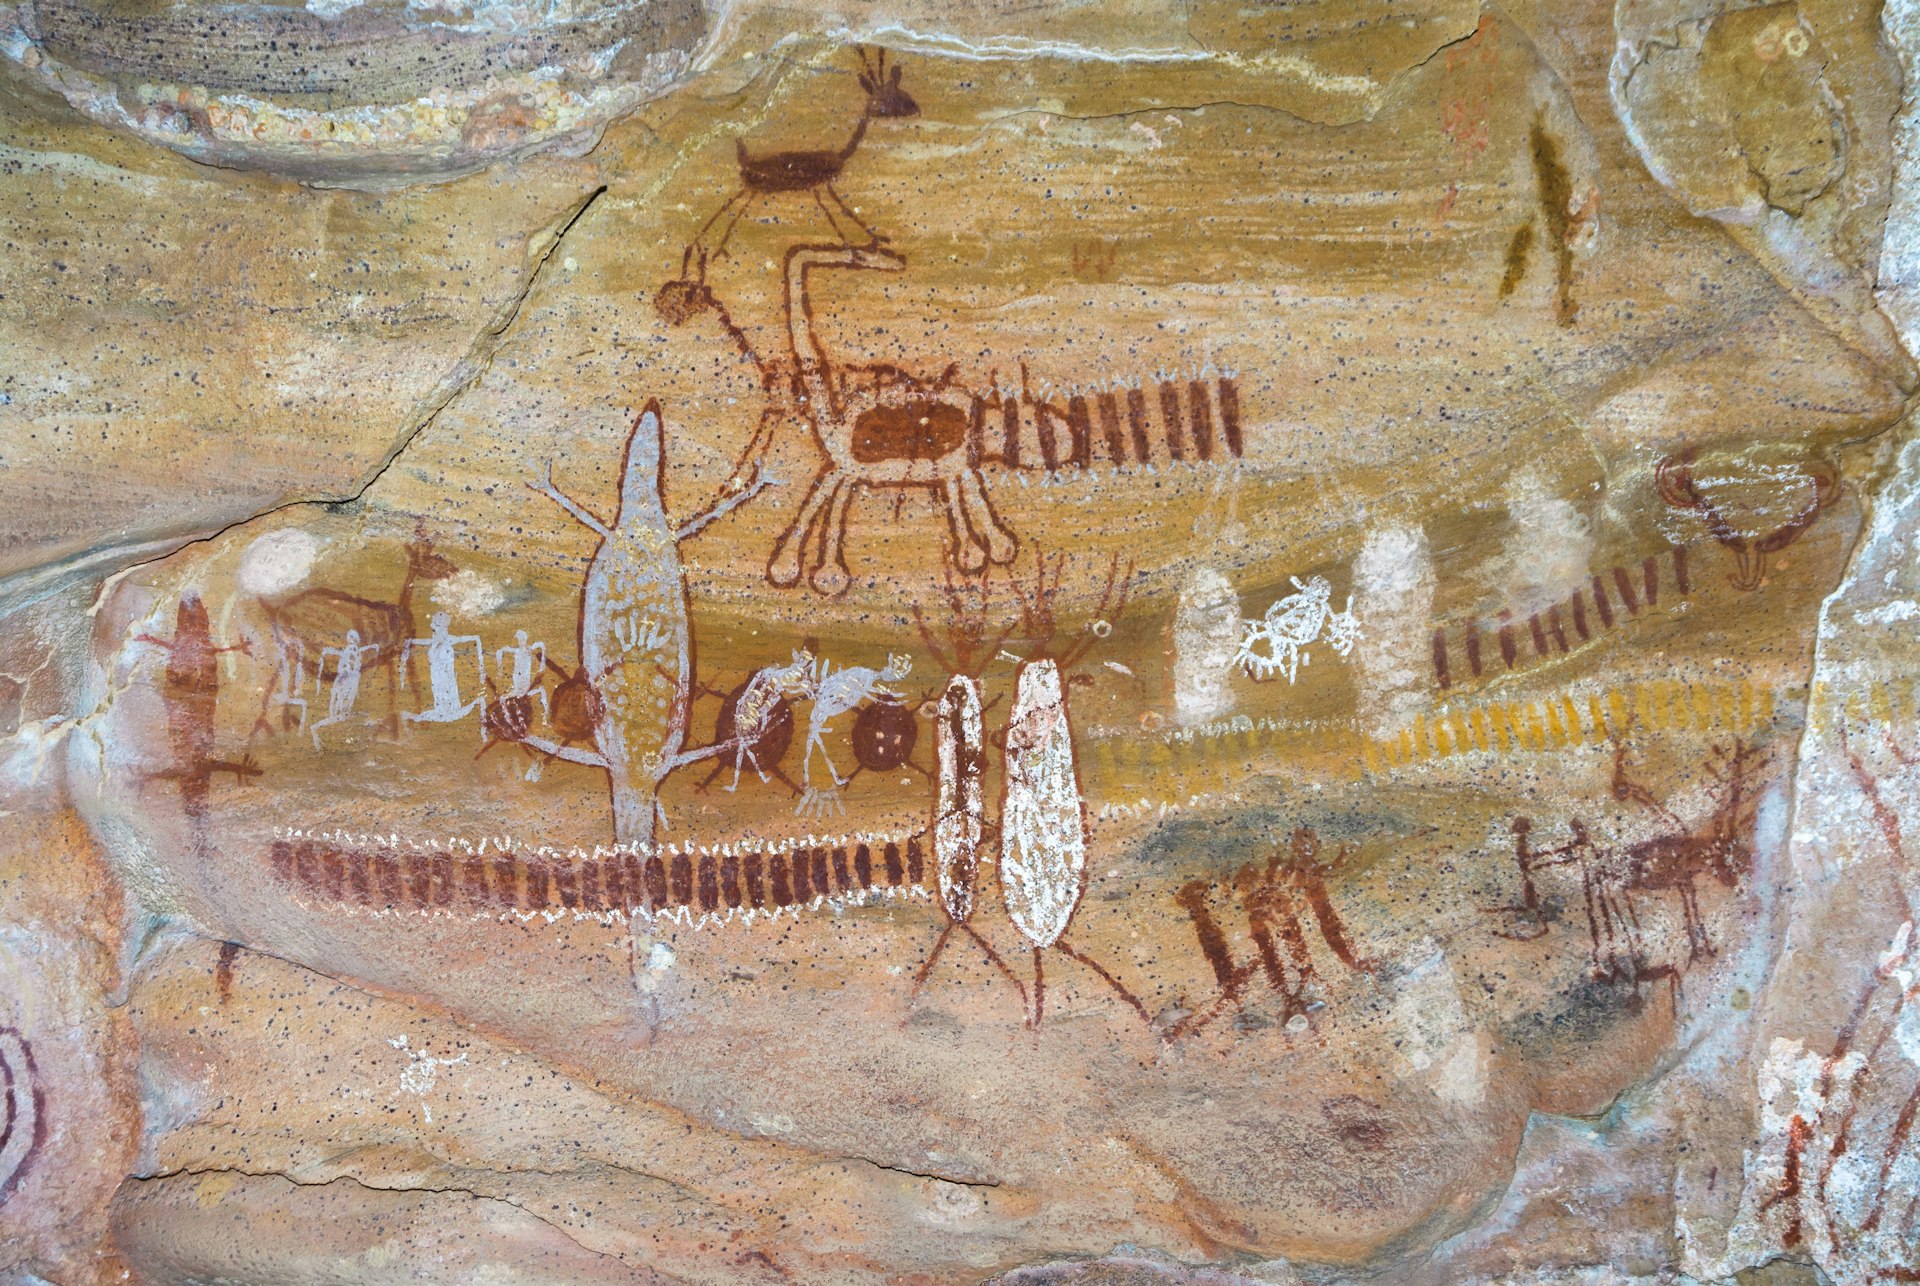 Rock paintings at Serra da Capivara National Park